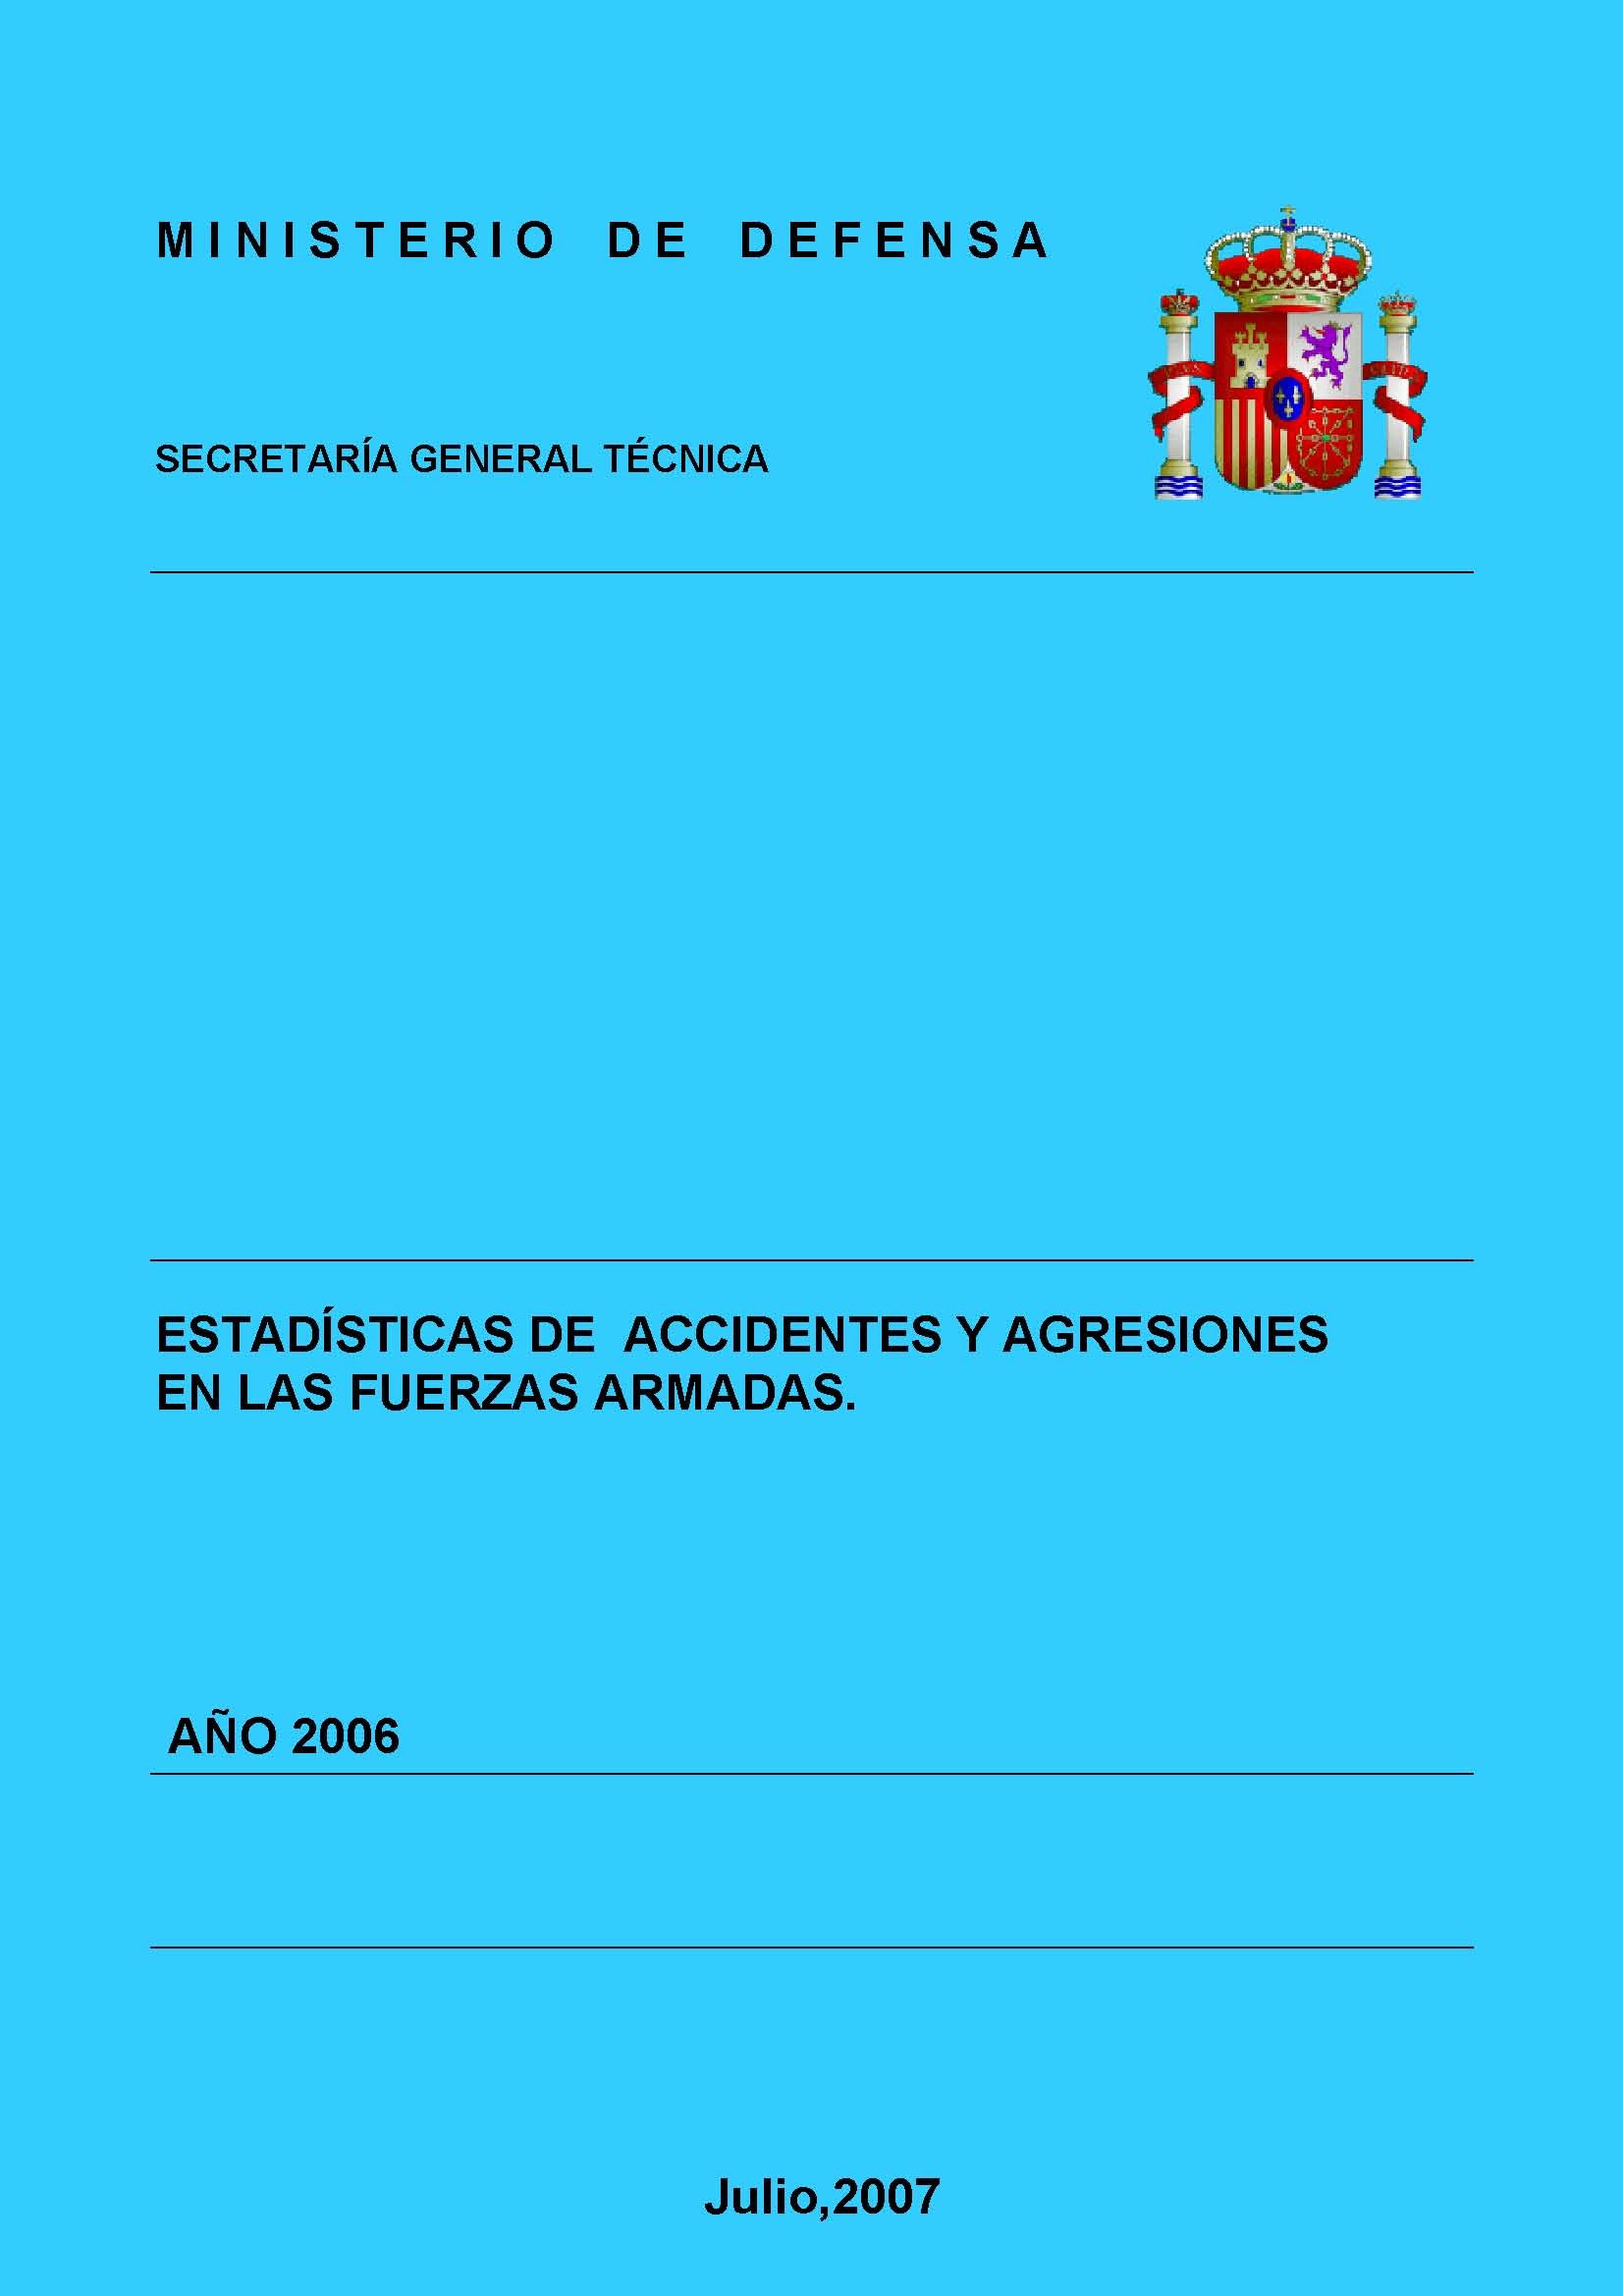 ESTADÍSTICA DE ACCIDENTES Y AGRESIONES EN LAS FUERZAS ARMADAS 2006